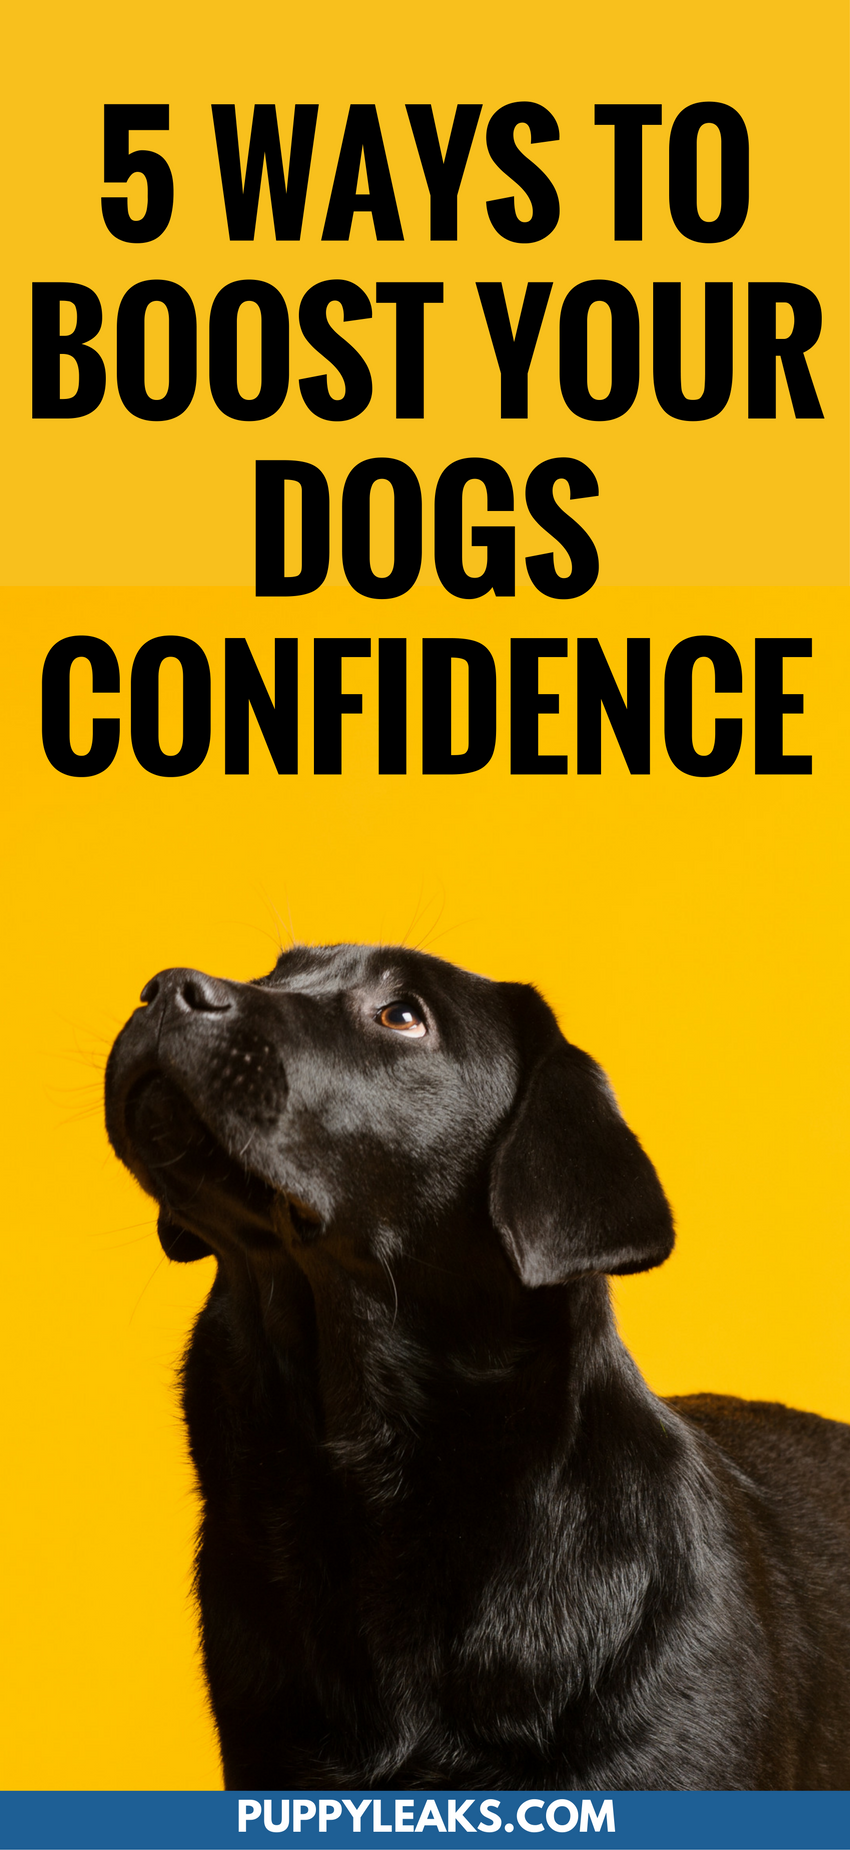 5 maneiras de aumentar a confiança de seus cães